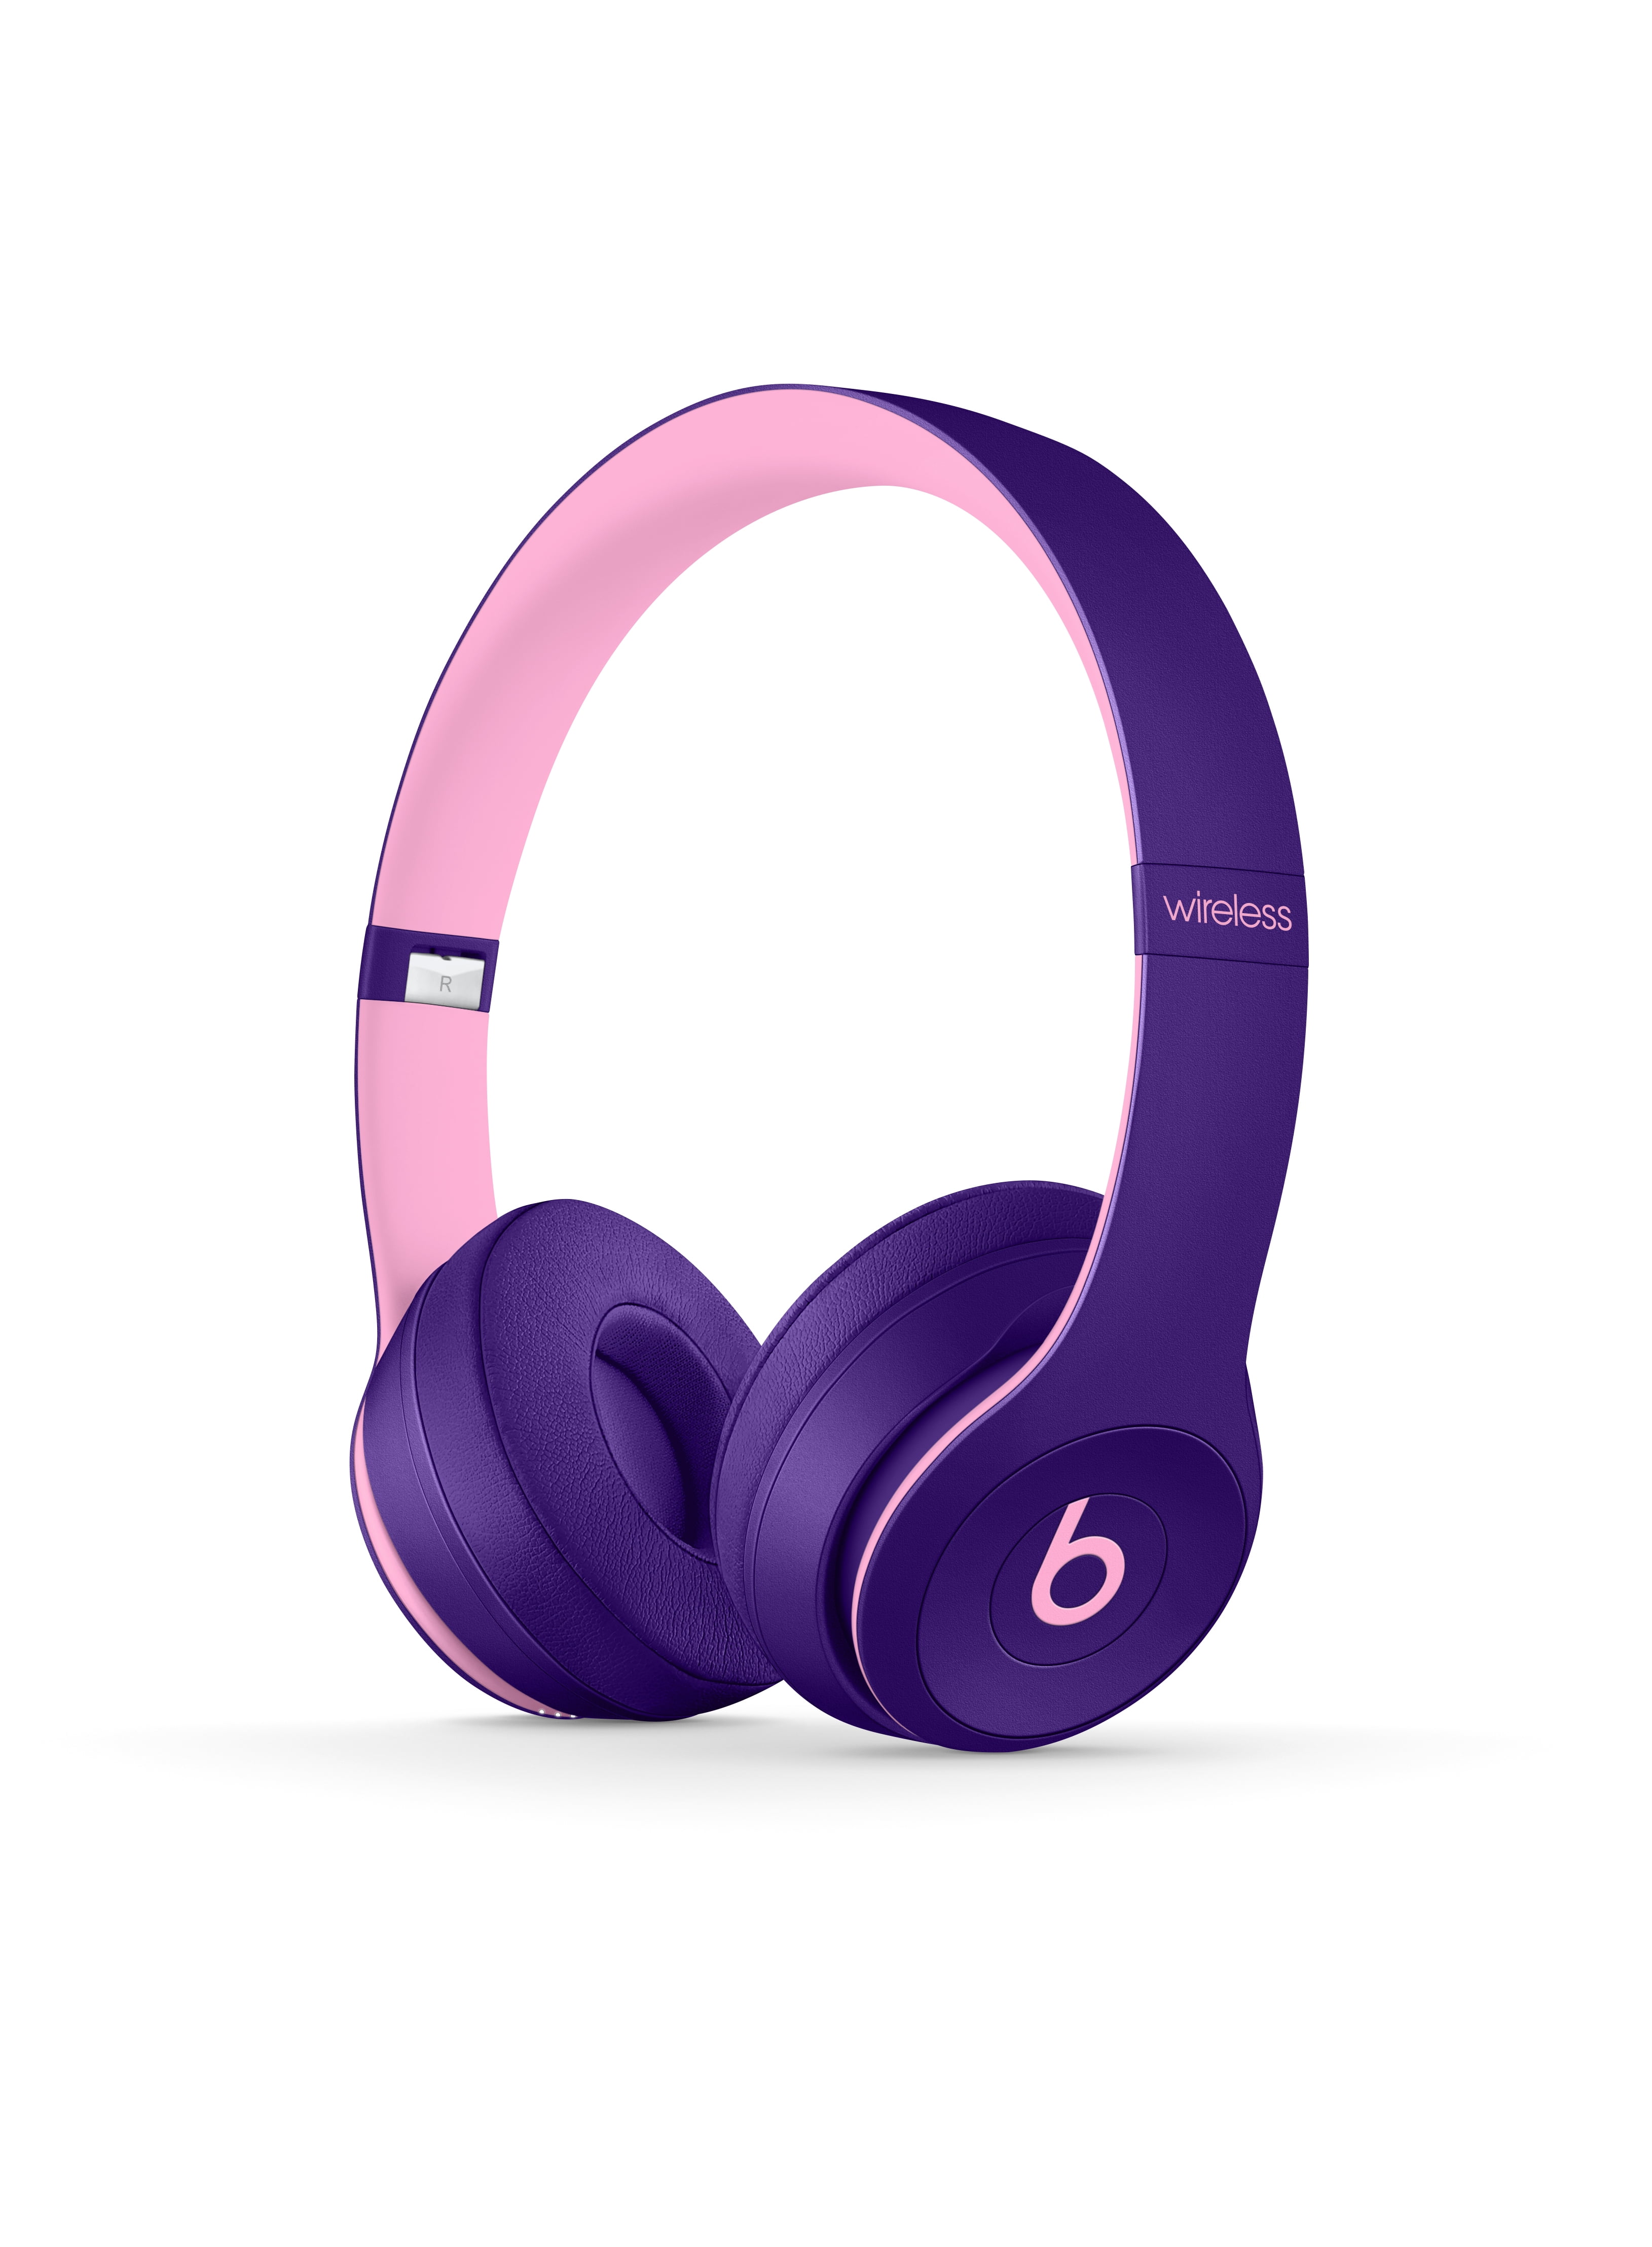 Restored Beats By Dr Dre Solo3 Wireless On Ear Headphones Pop Violet